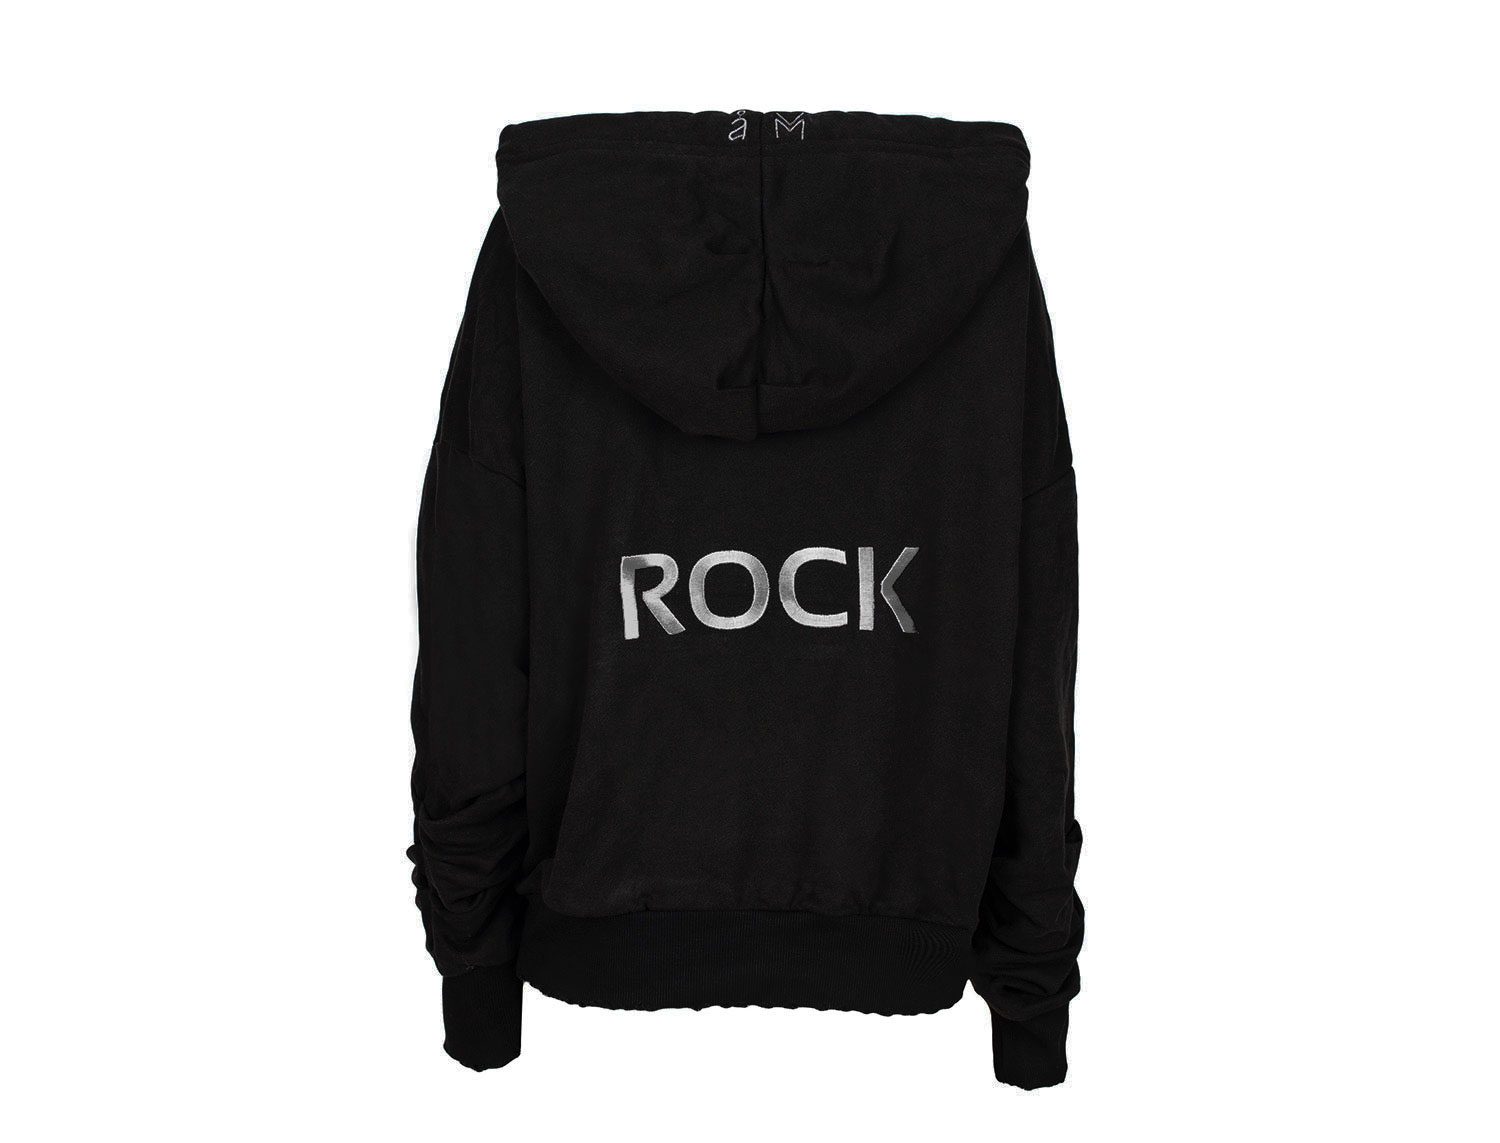 Μαύρη κουκούλα με φερμουάρ “Rock”.